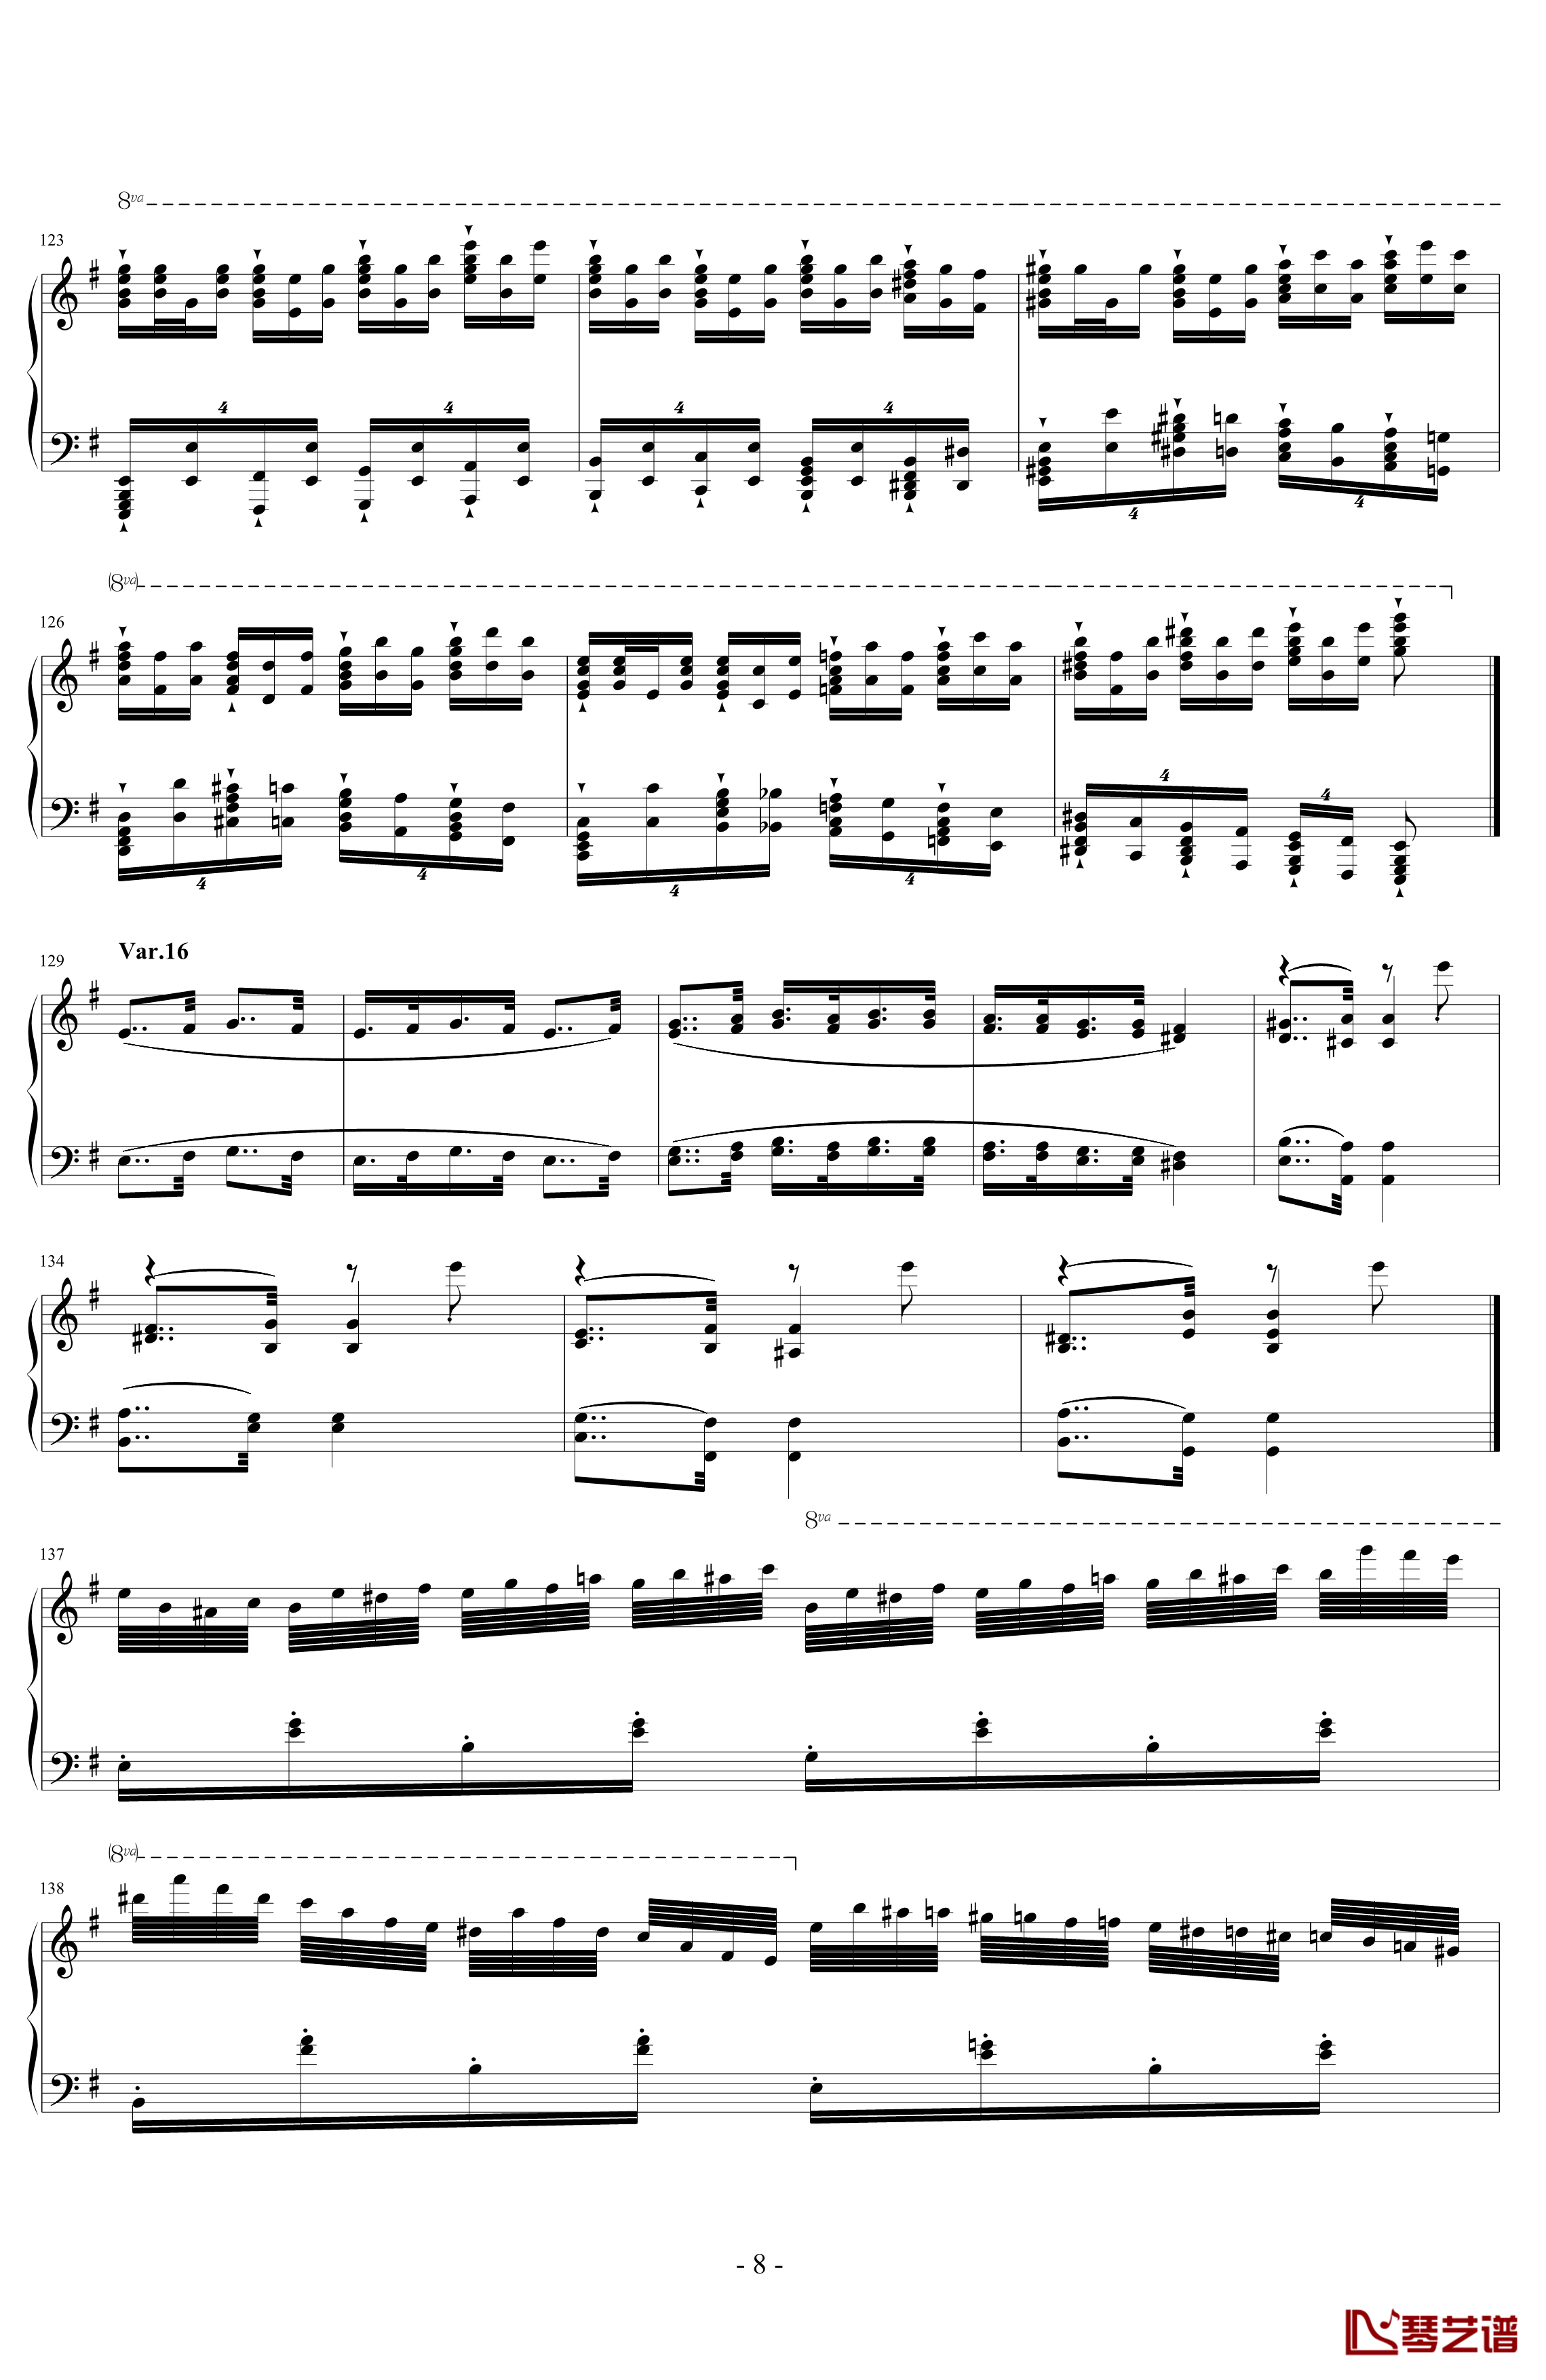 阿尔坎Op.39 No.12 变奏曲钢琴谱-Charles-Valentin Alkan8